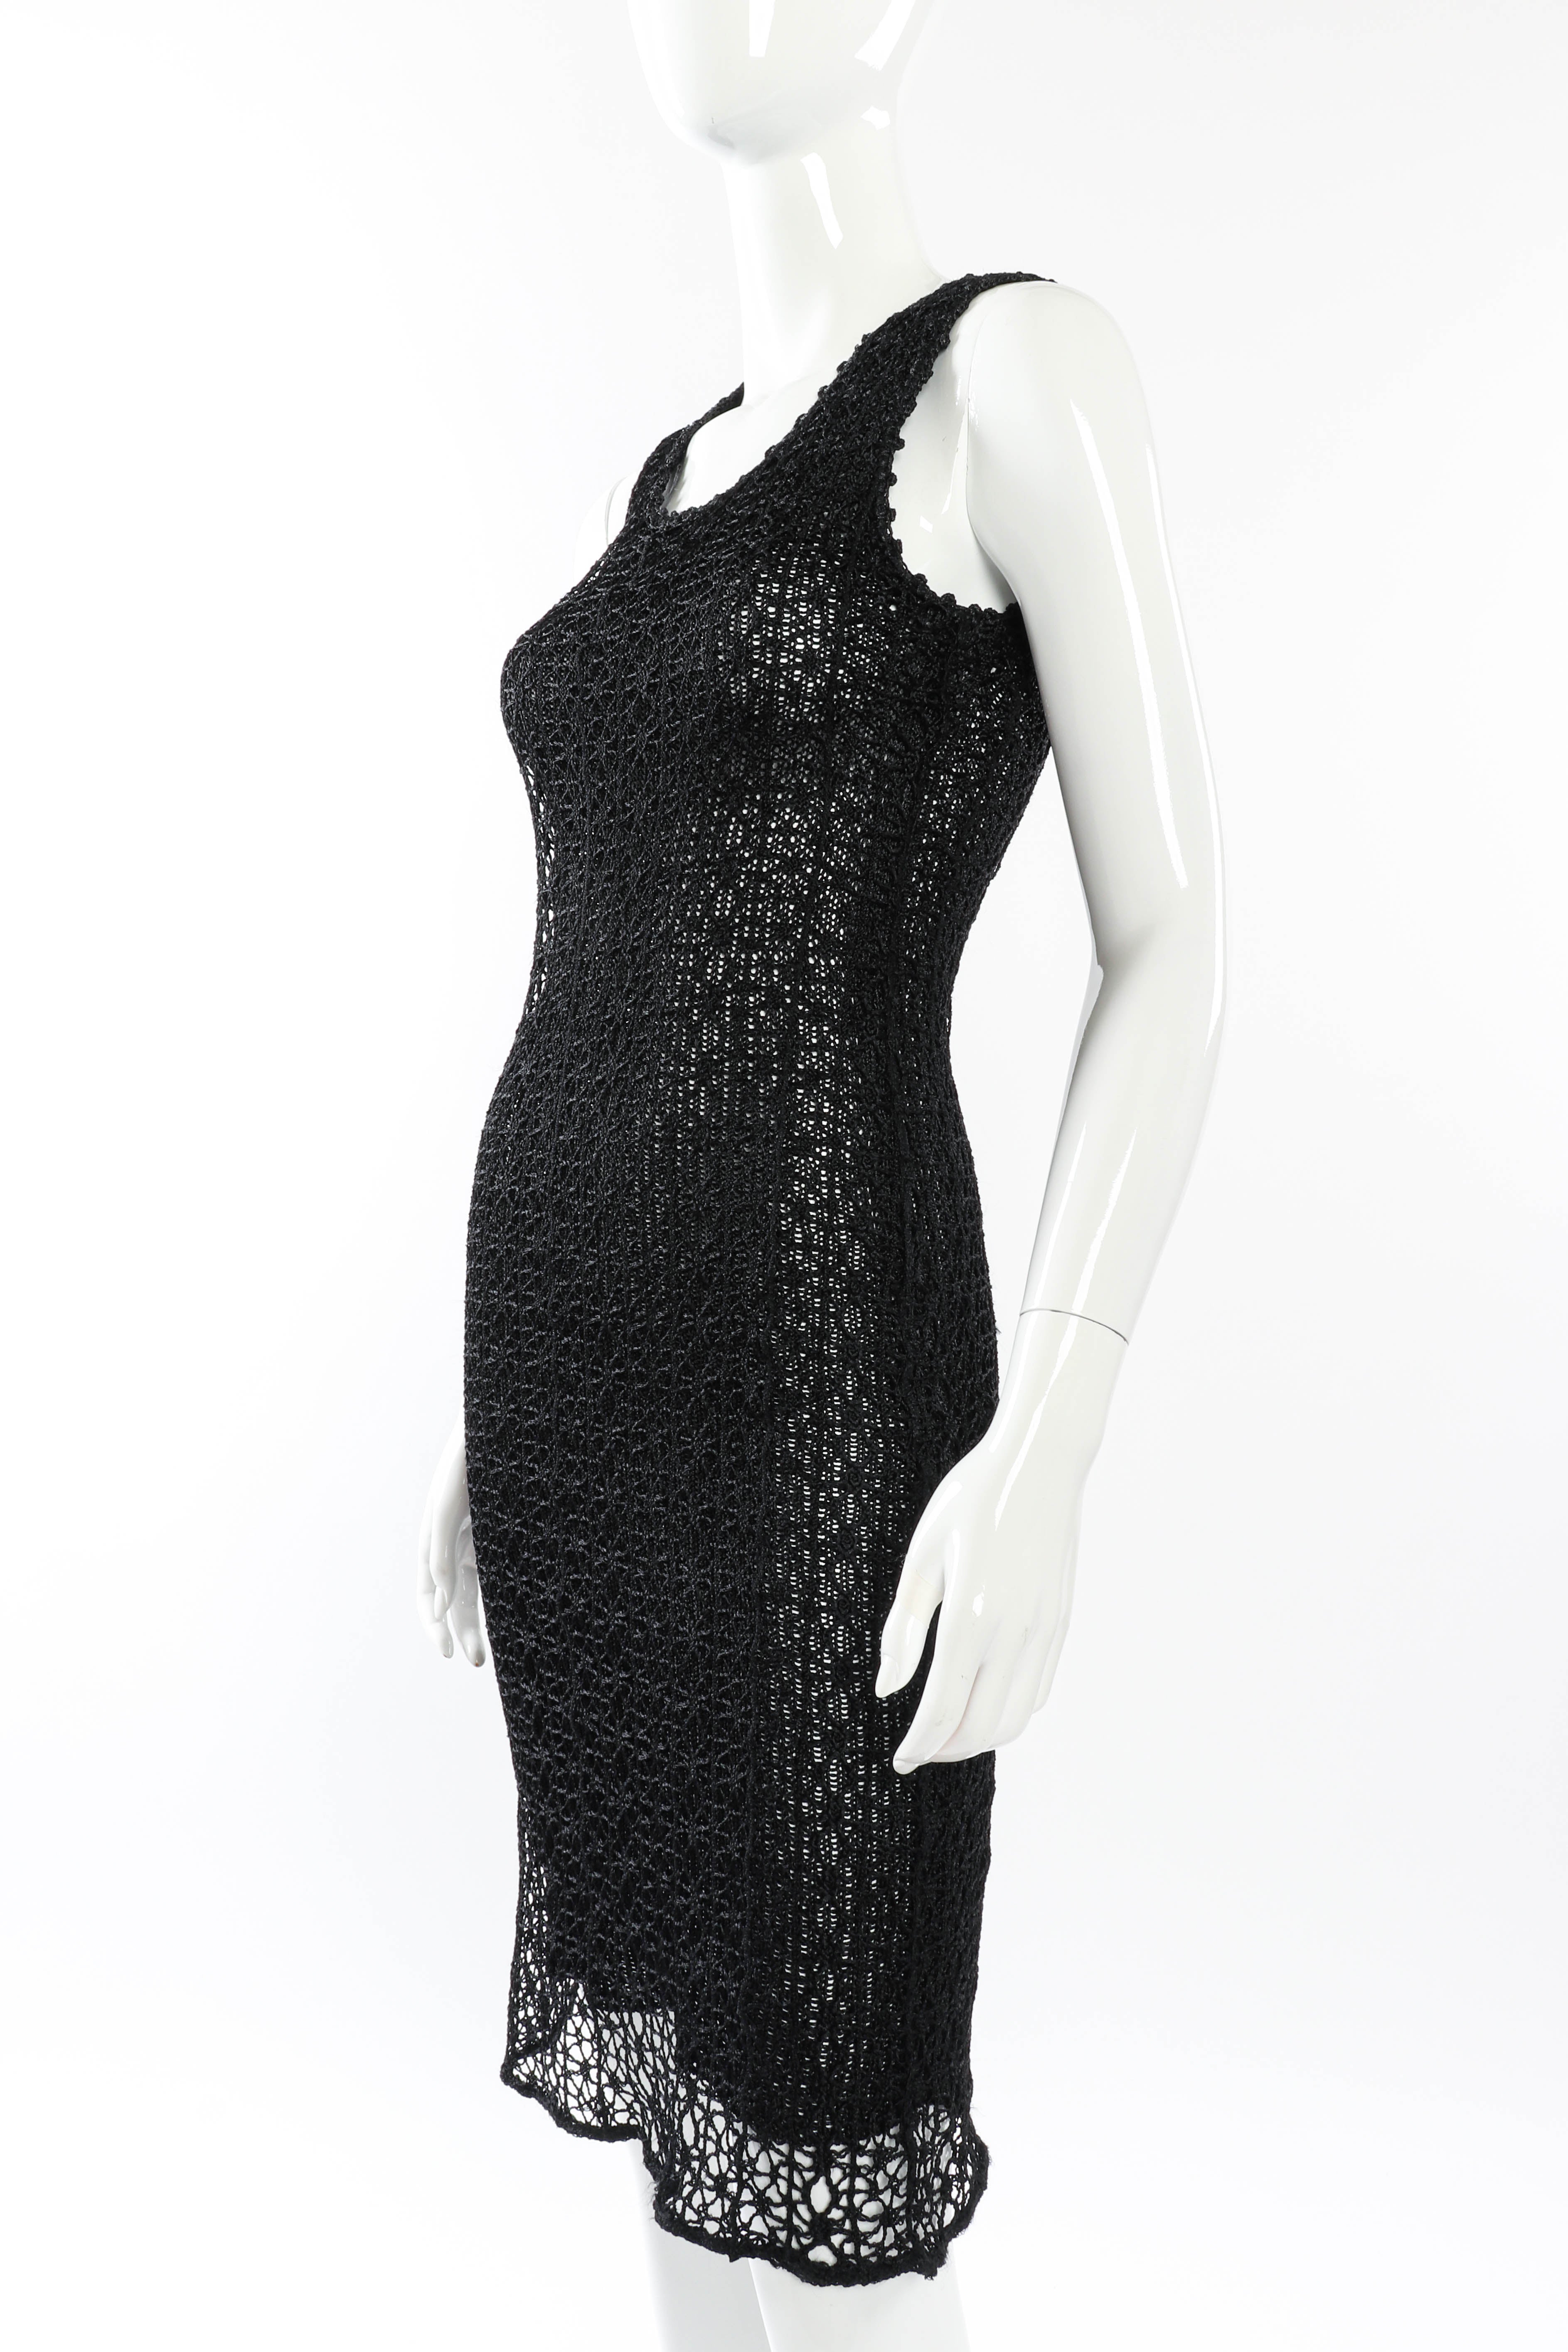 Vintage Christian Lacroix Open Knit Crochet Dress 3/4 front on mannequin @recessla